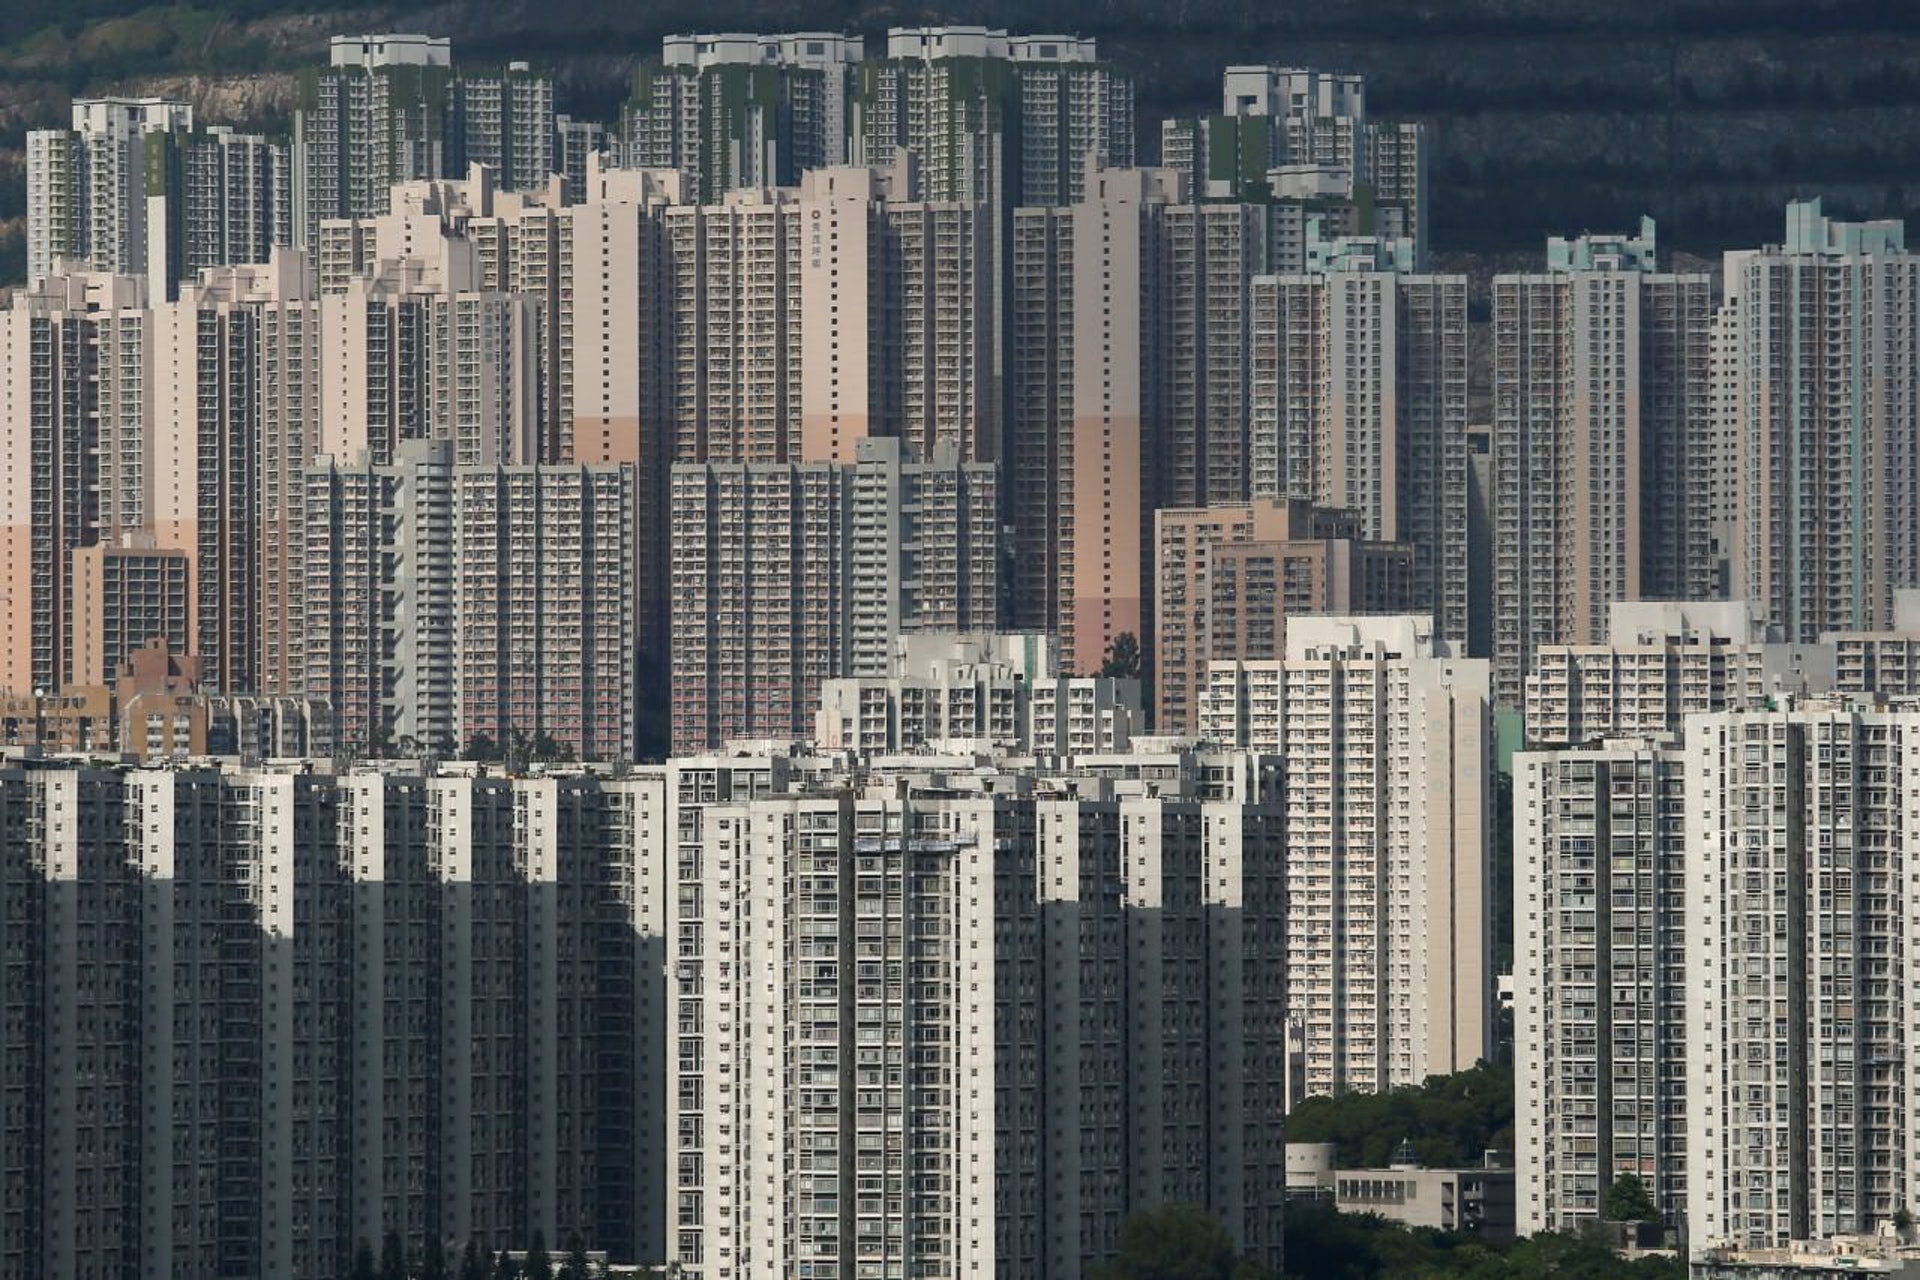 Hong Kong houses.